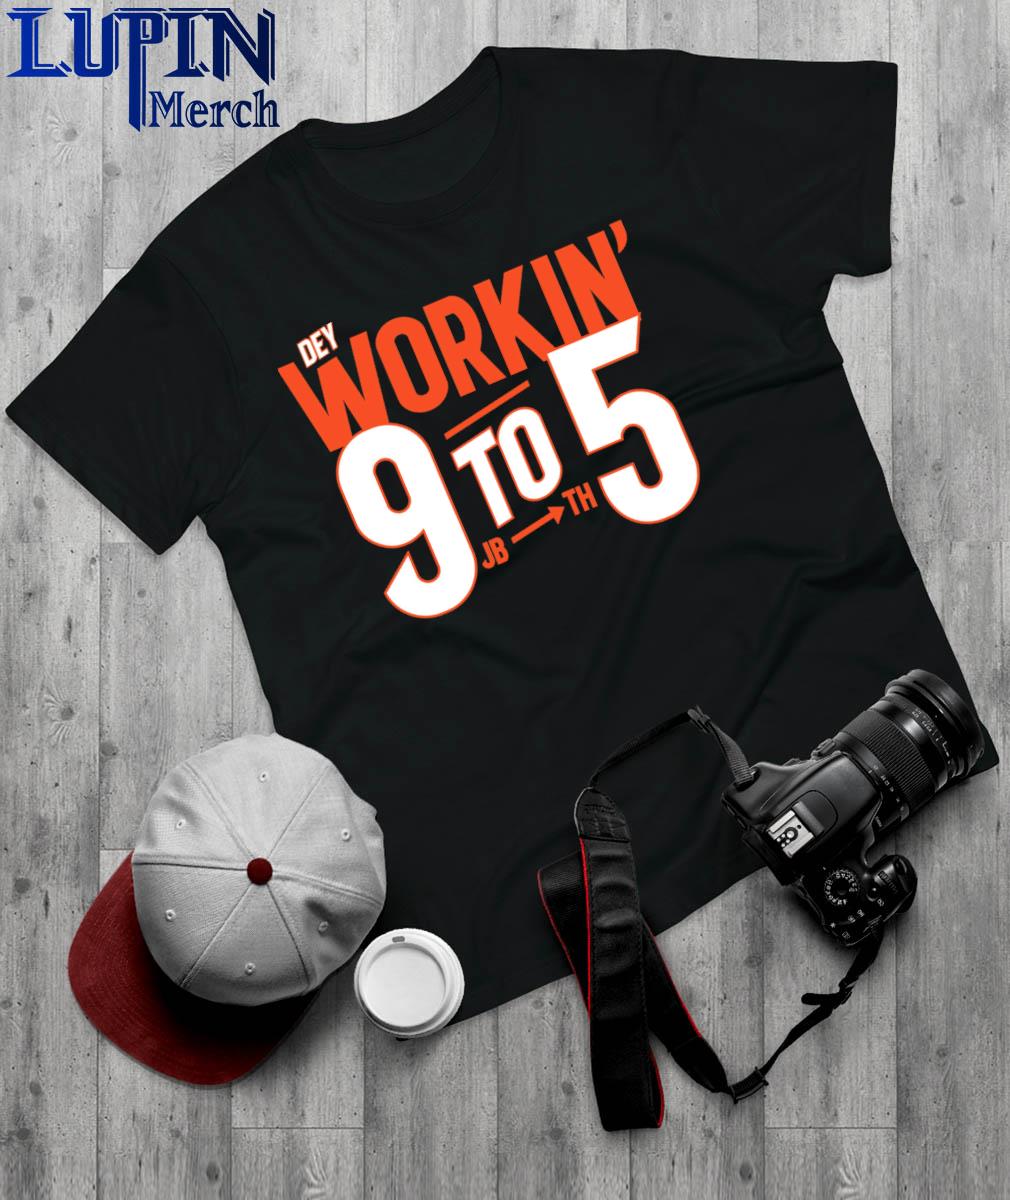 Official Dey Workin' 9 to 5 Cincinnati Bengals Shirt